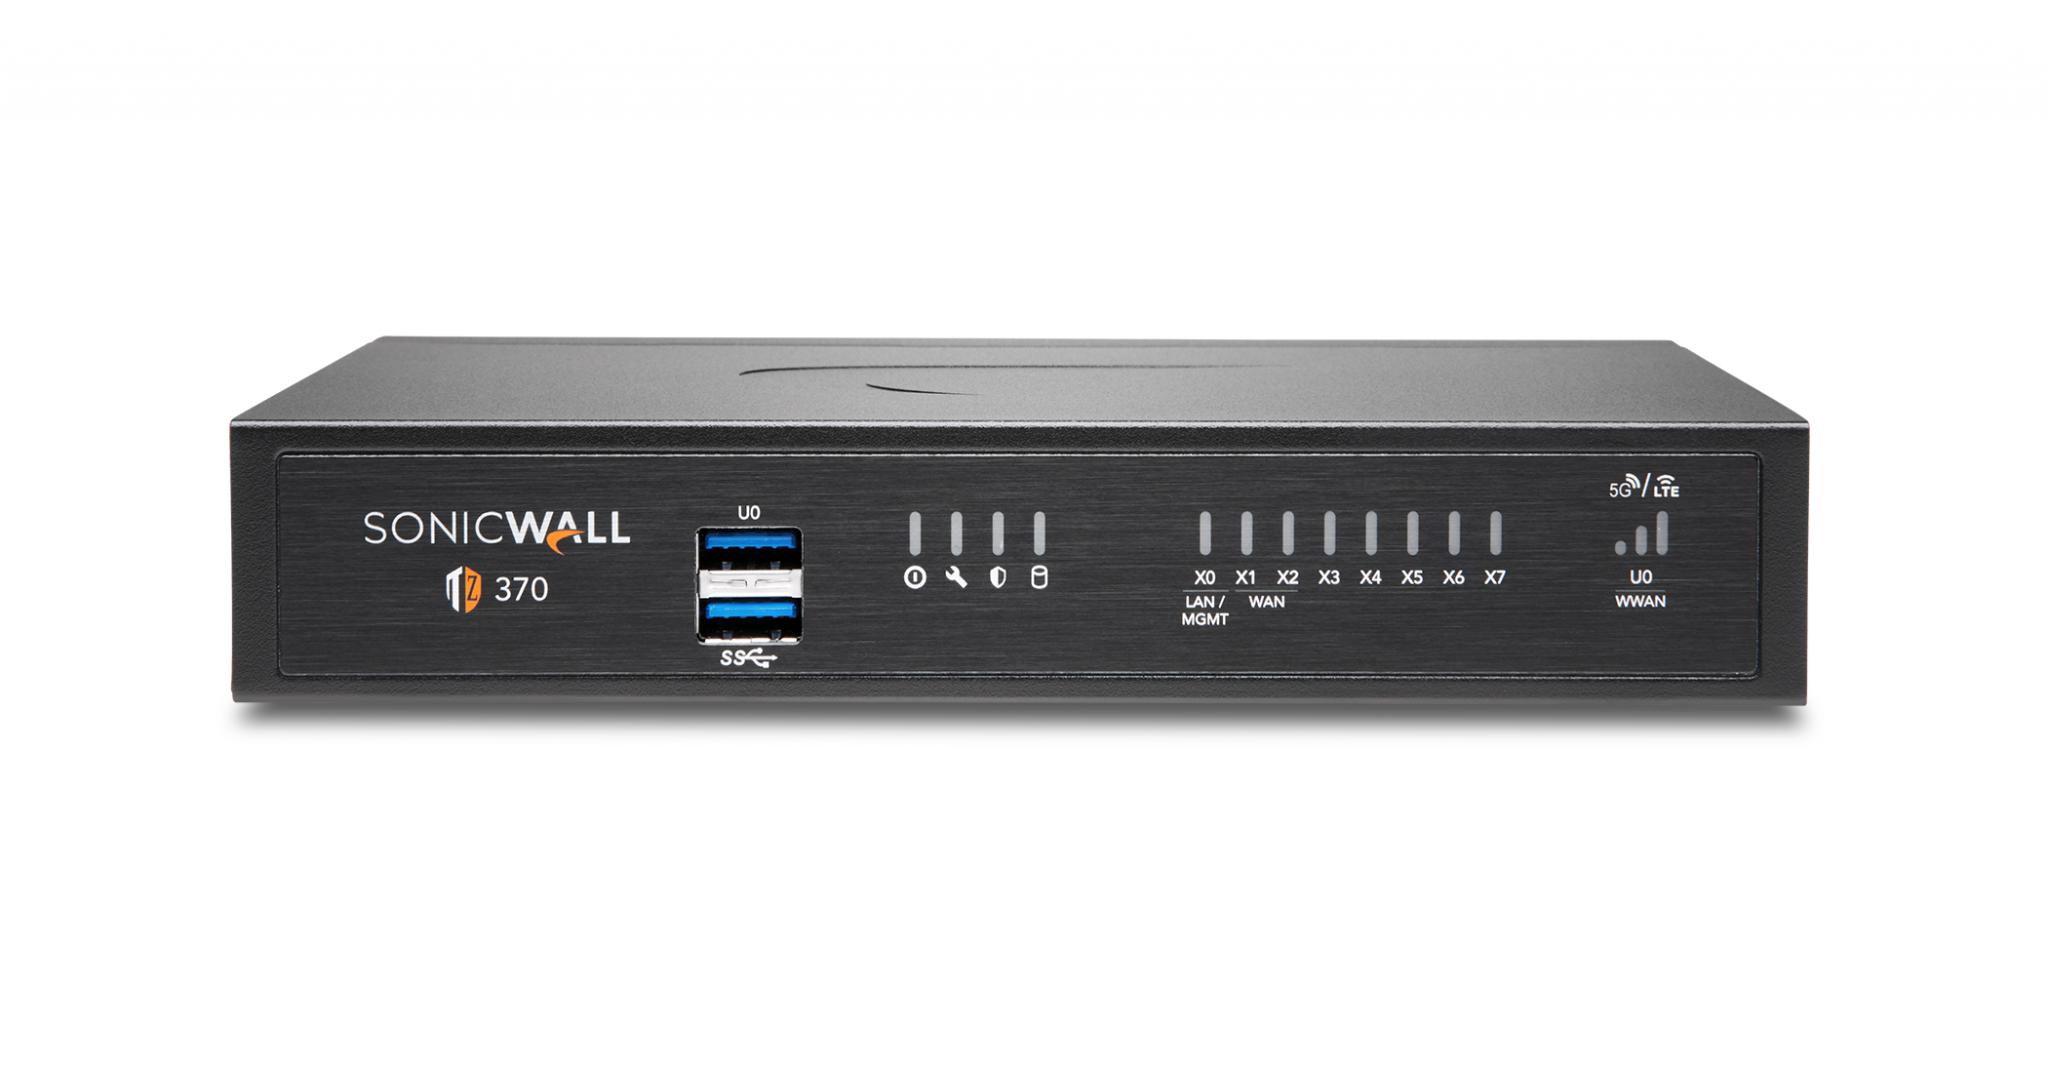 Firewall SonicWall model TZ370 8xGbE 2xUSB 3.0 firewall throughput 3Gbps, IPS throughput 1.5Gbps, VPN throughput 1.3Gbps, maxim 100 clienti SSL VPN, rackmount kit separat (02-SSC-3113), PSU alimentator (36W), licenta Total Secure Advanced Edition (capture advanced threat, gateway antivirus